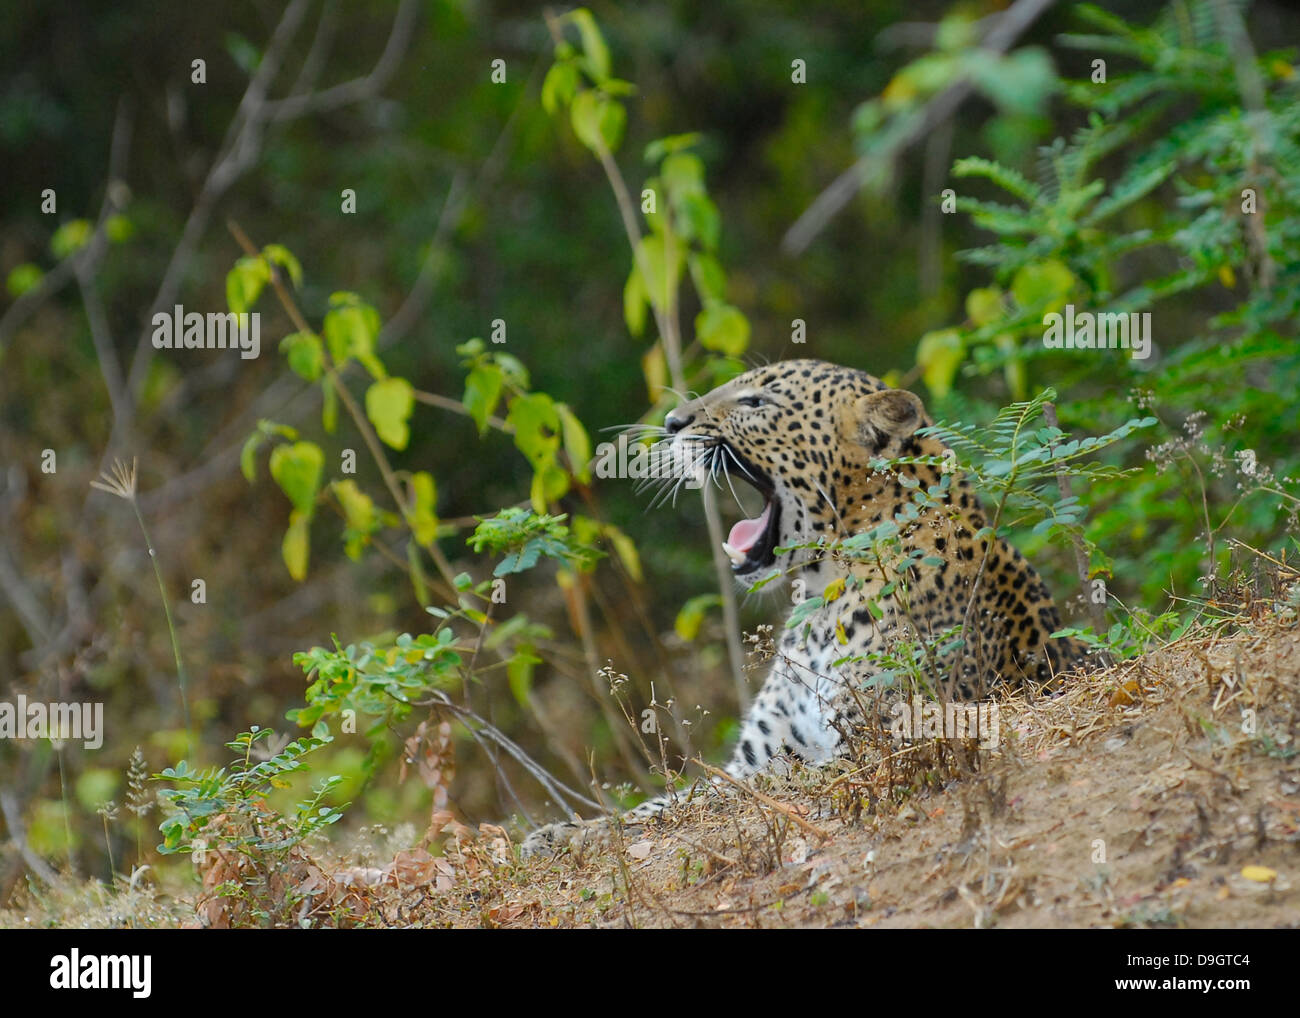 Sri Lankan Leopard in Yala National Park Stock Photo